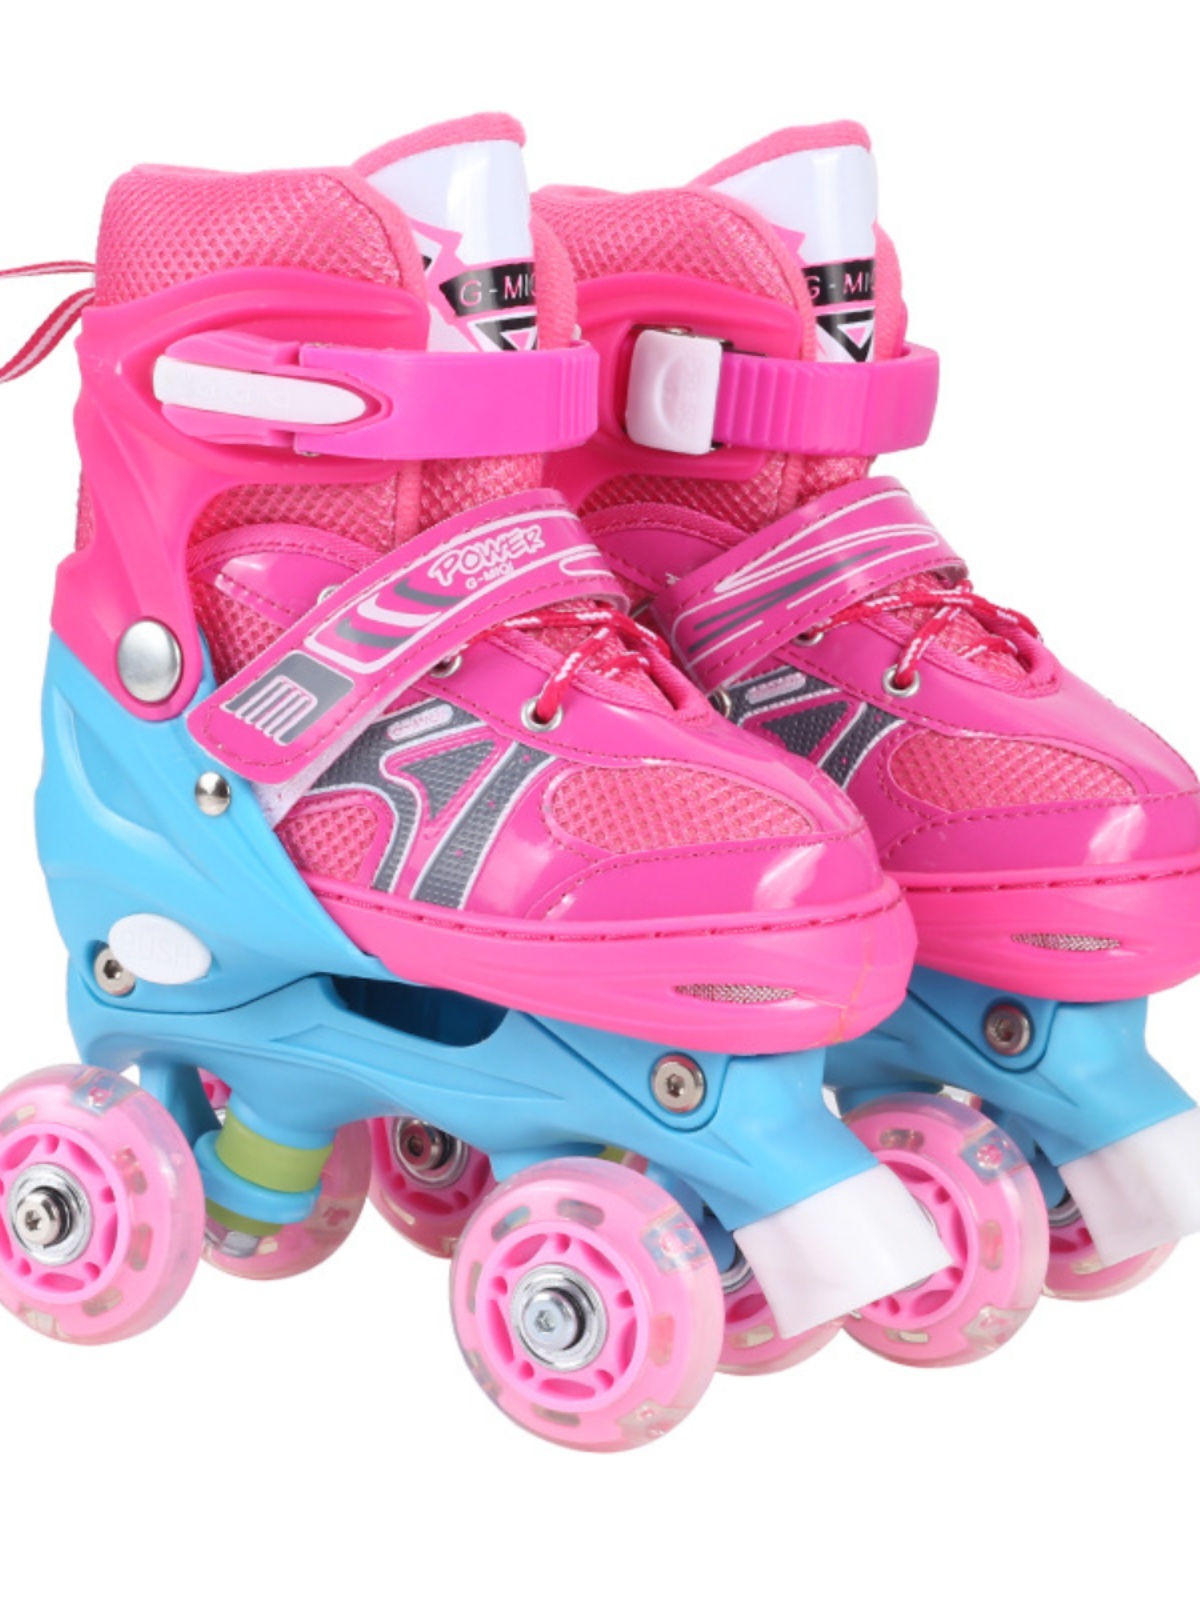 双排溜冰鞋儿童初学者全套装轮滑鞋男女童滑冰鞋可调节四轮旱冰鞋